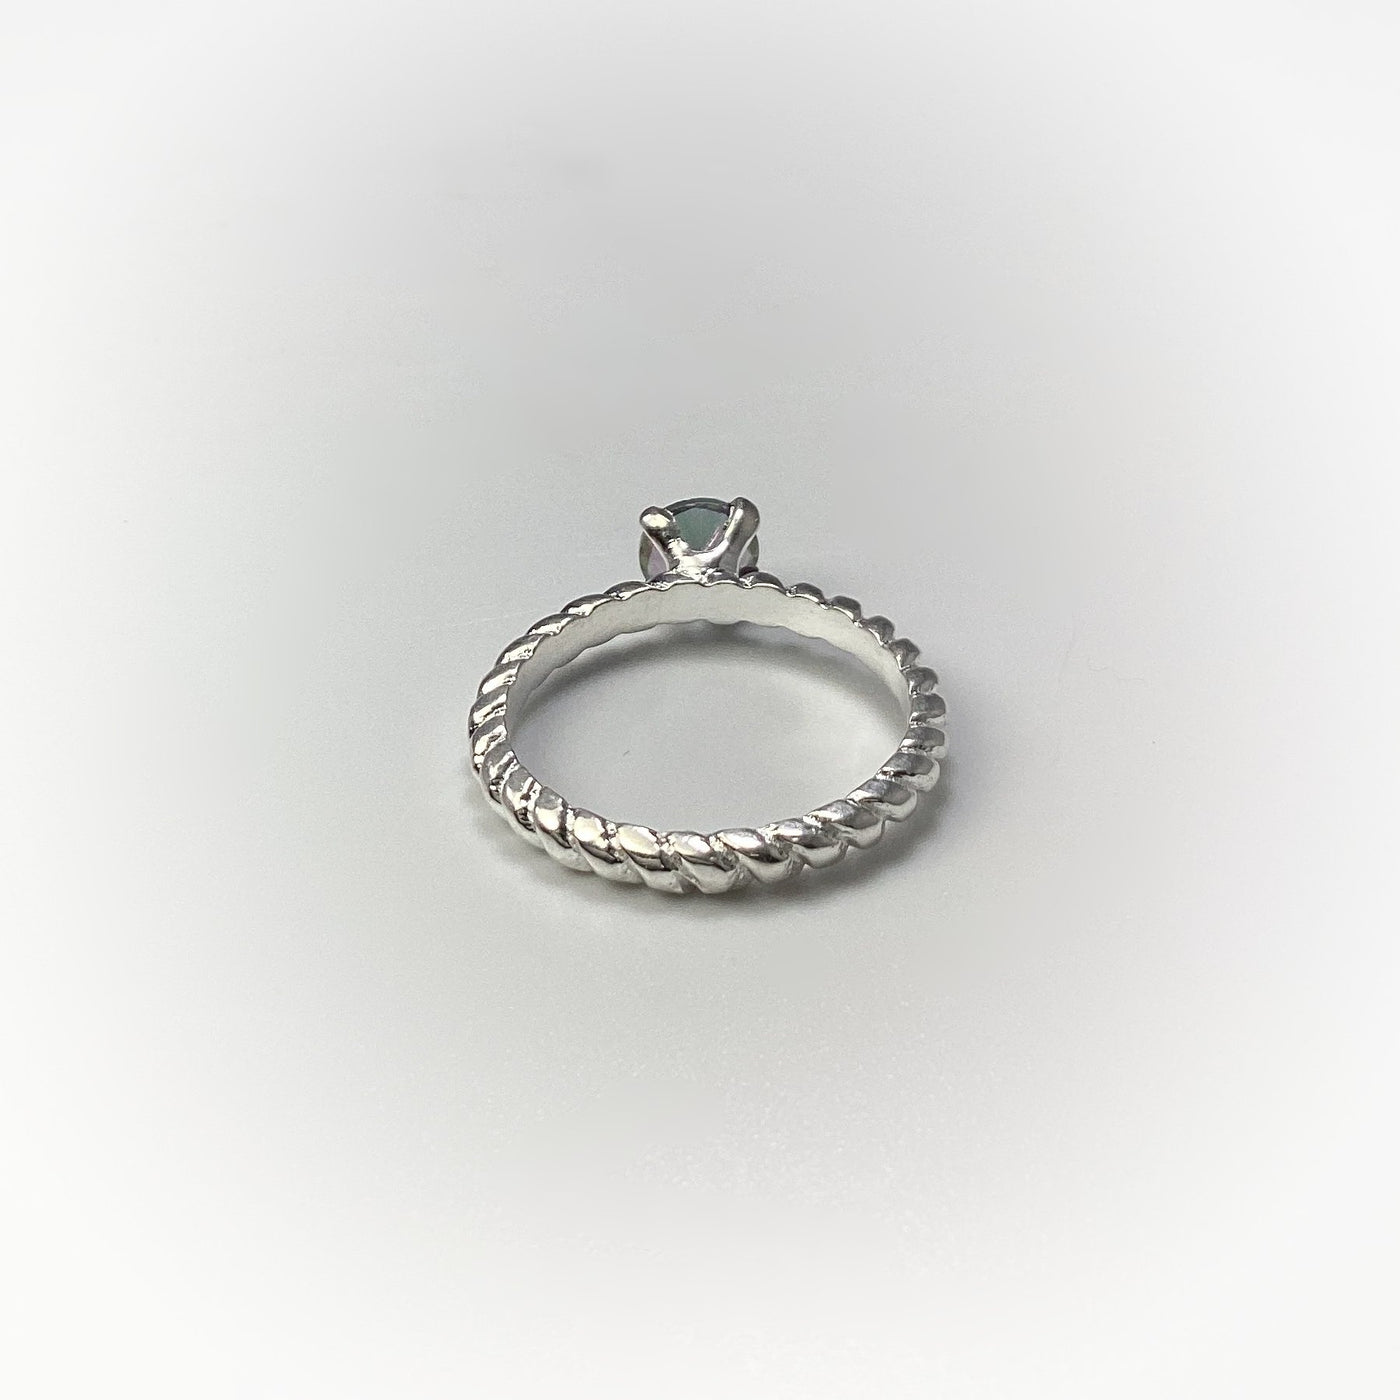 Mystic Topaz Ring